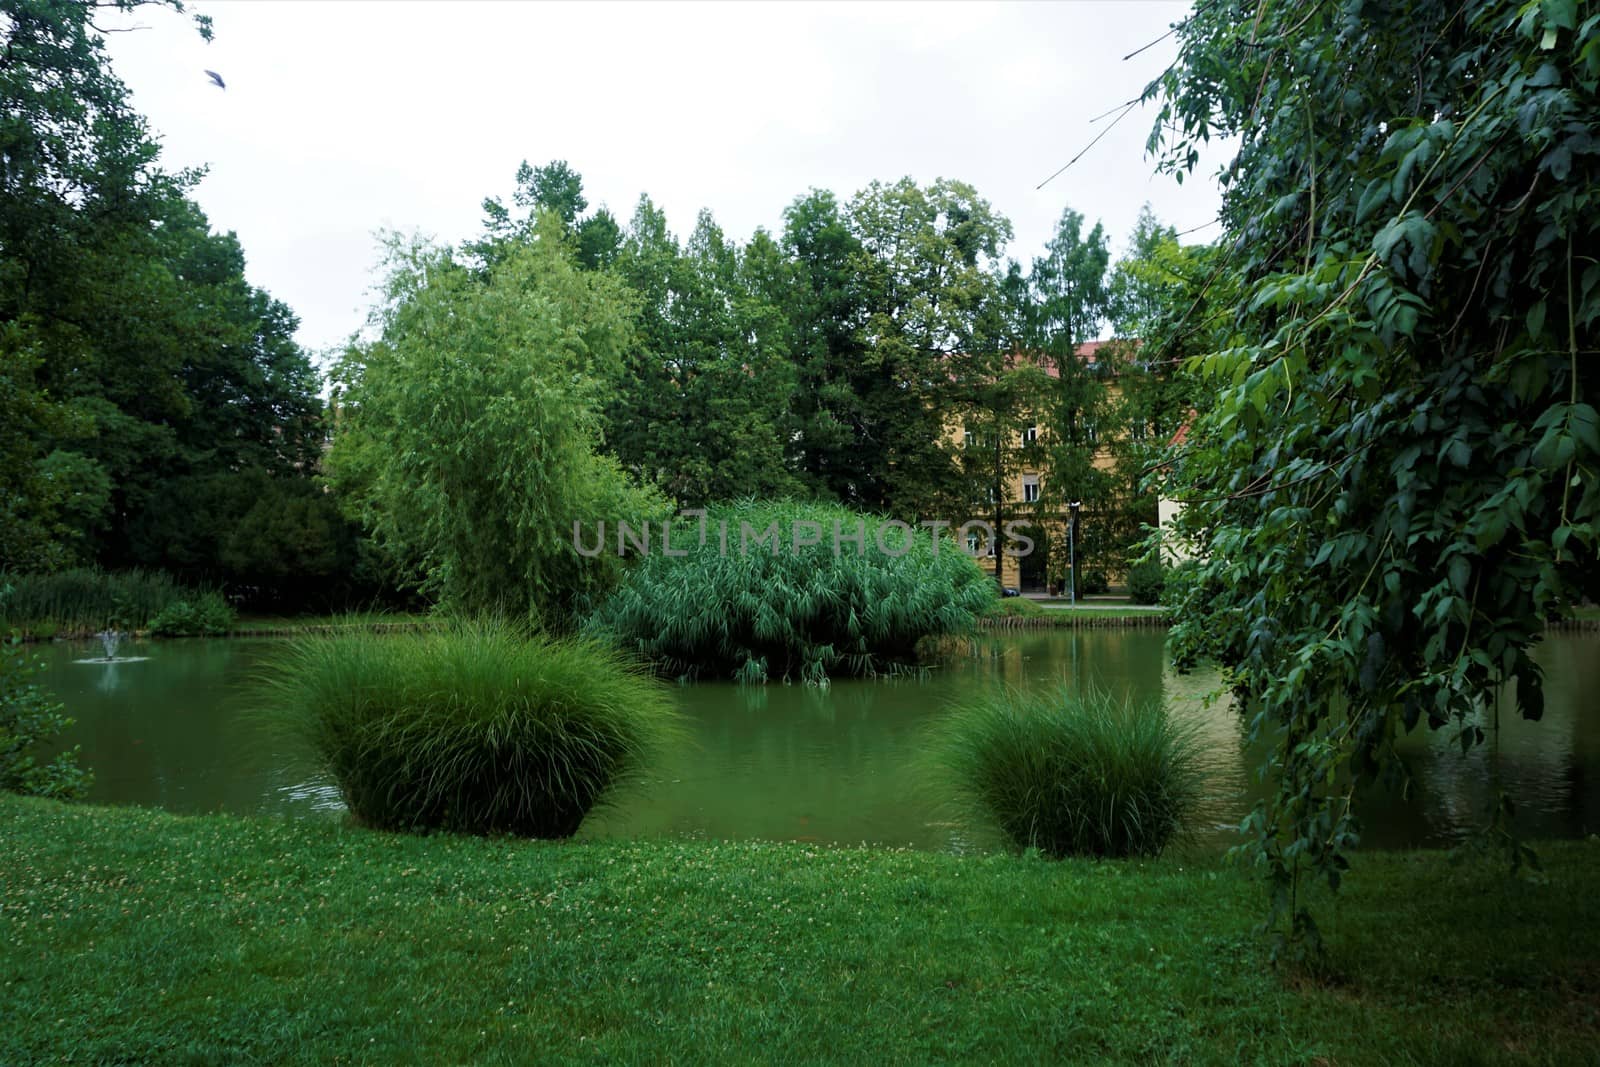 Scenery in Maribor mestni park, Slovenia by pisces2386